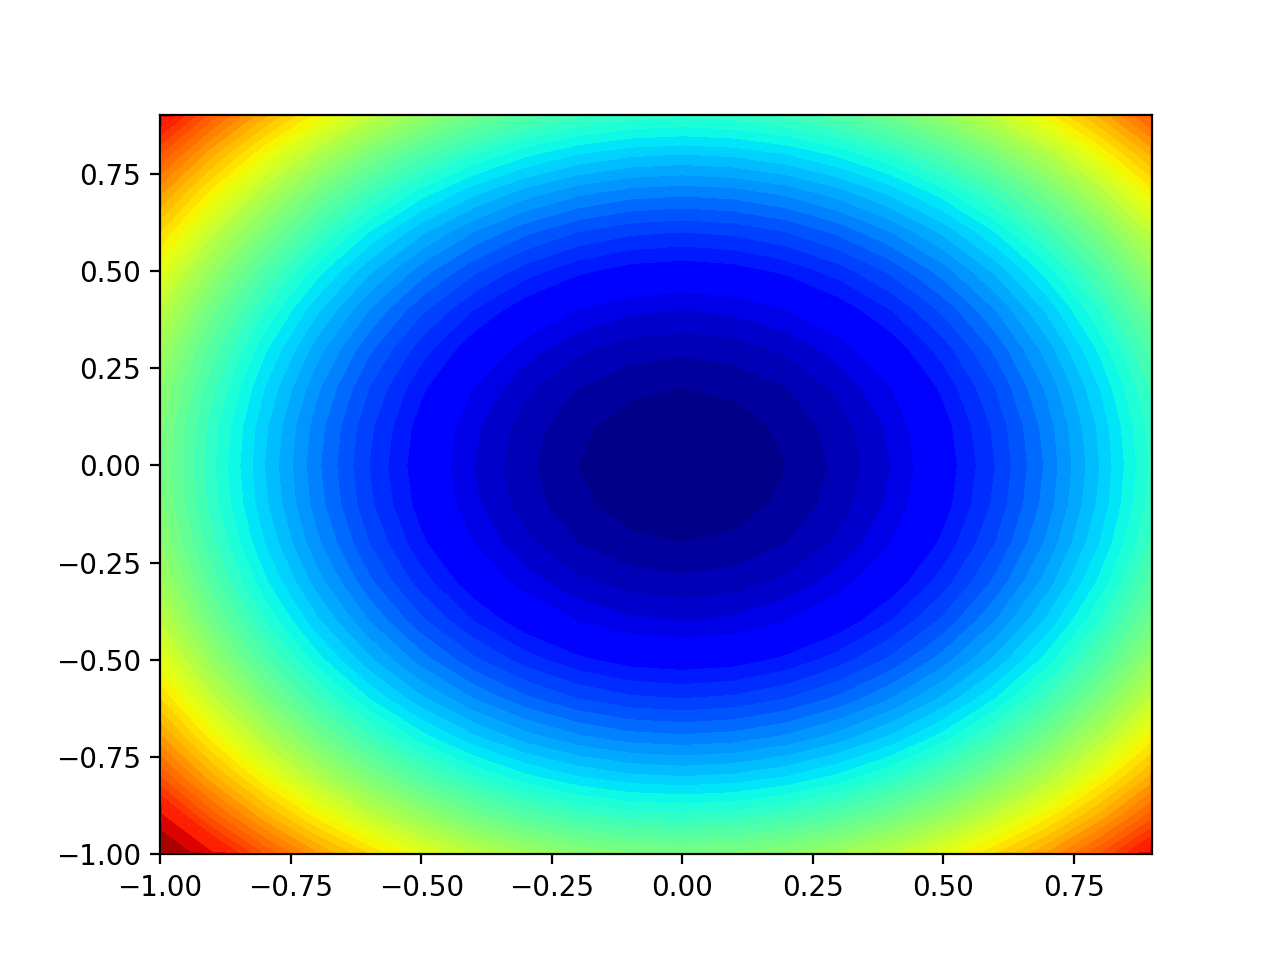 Gráfico de contorno bidimensional de la función objetivo de prueba